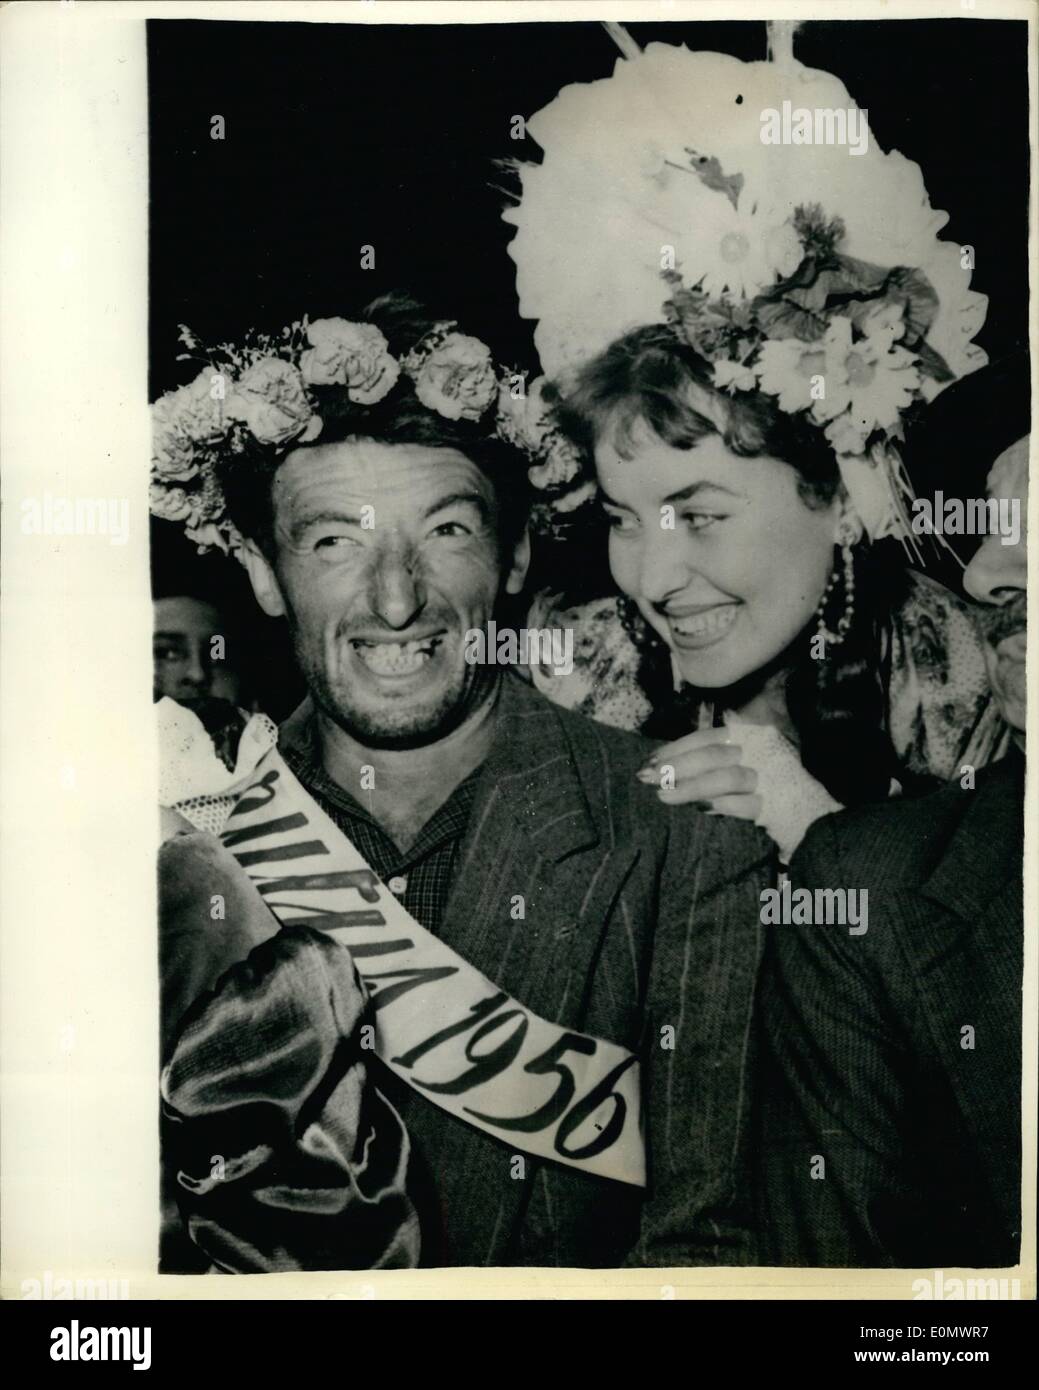 Jul 07, 1956 - gana el título de ''Mister feo 1956''... La ceremonia anual para seleccionar ''Mr. Feo"- fue celebrada recientemente LUSERNA SAN GIOVANNI - una pintoresca sección de Italia. La selección fue realizada por una bandada de la más bella de las muchachas locales - y el título fue ganado por un competidor muy feo. Muestra Fotográfica Keystone: Sr. feo 1956 - con uno de los locales jurado formado por adorables chicas conocido como Giacomette. Foto de stock